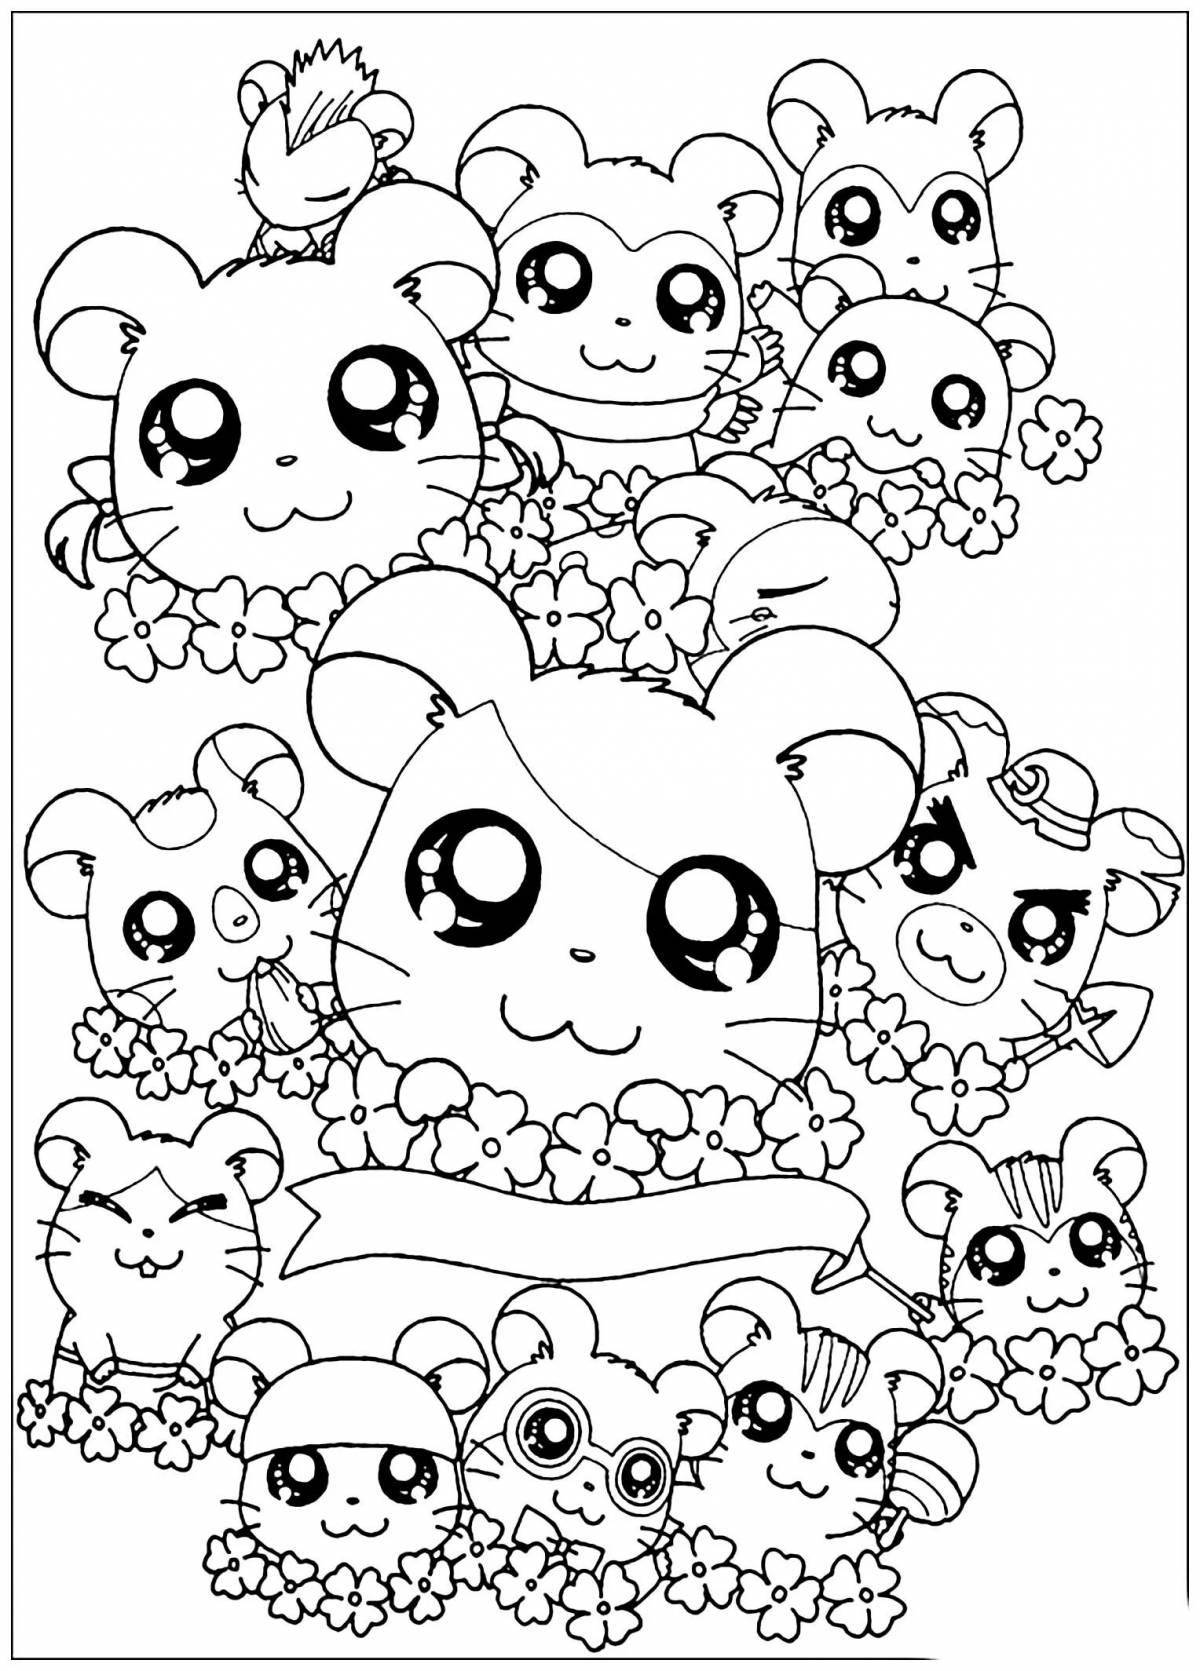 Adorable kawaii coloring page